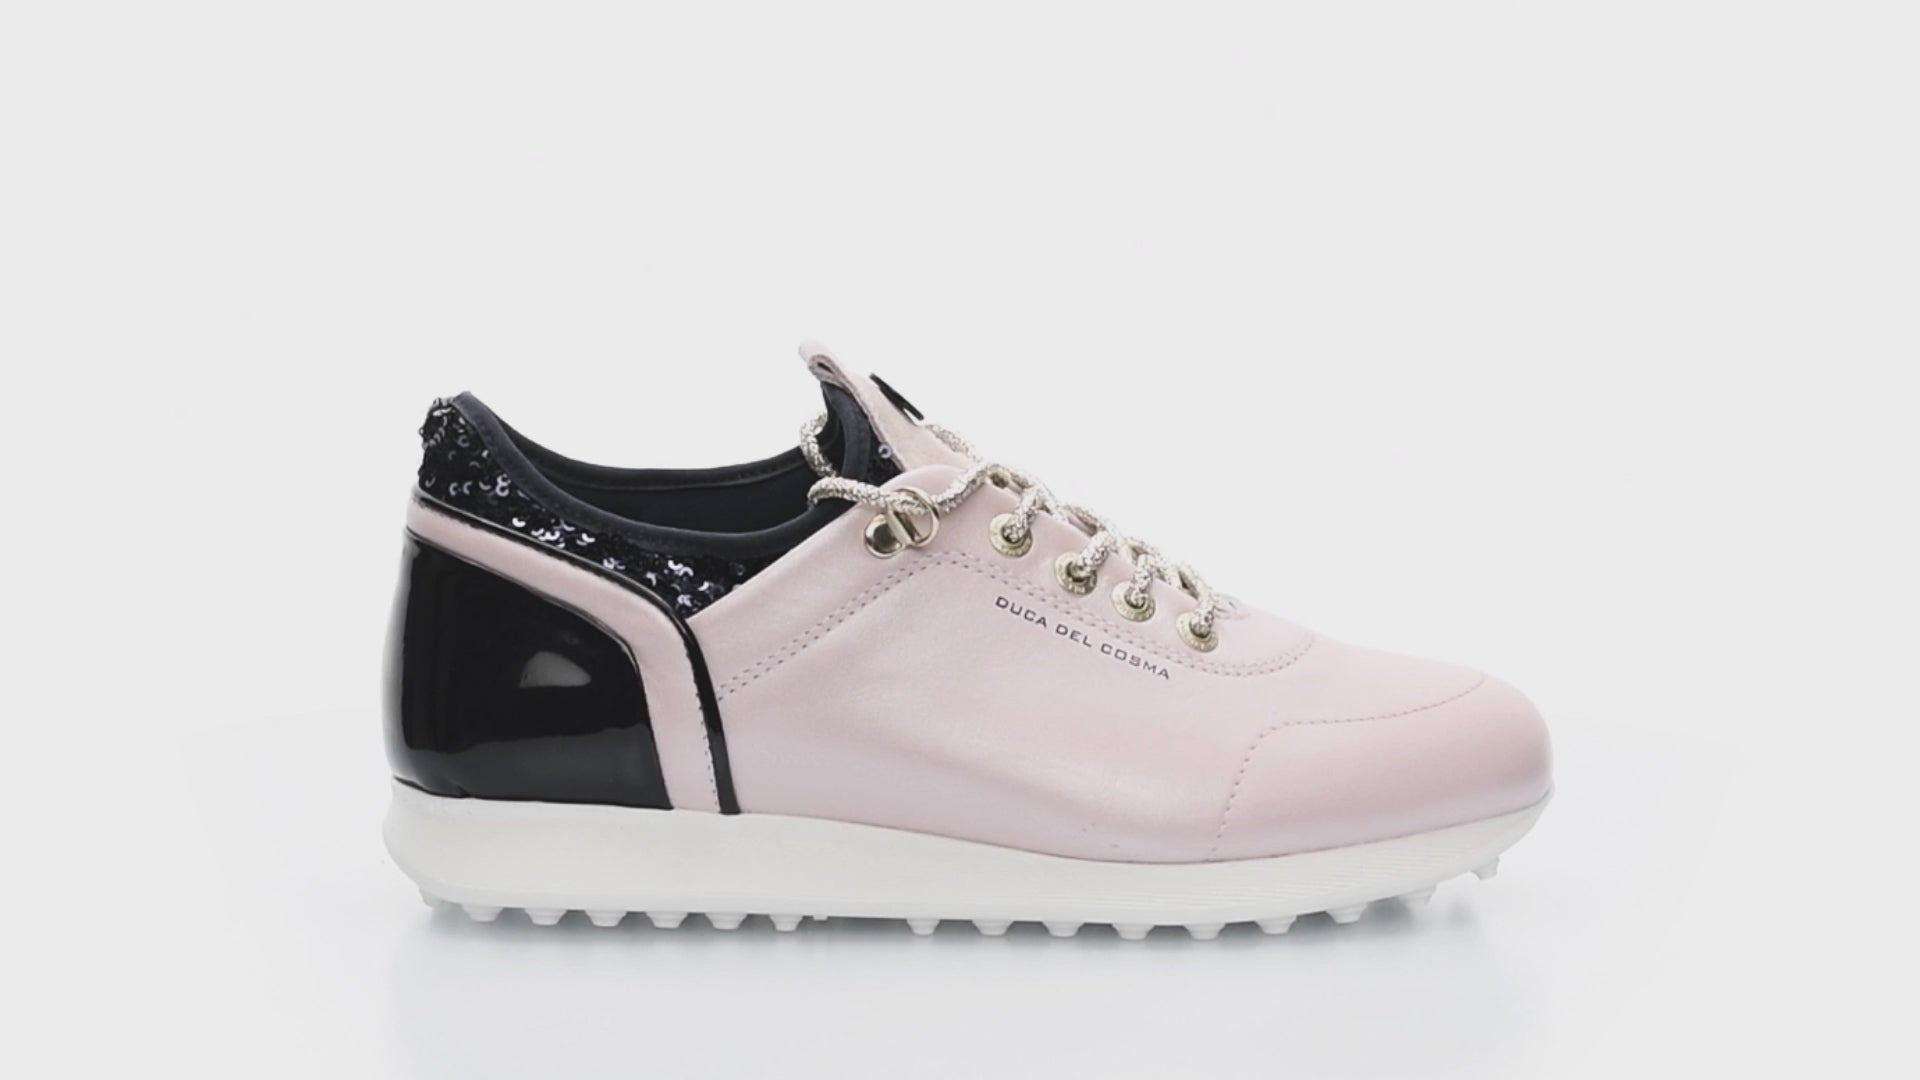 Pose Pink/Navy - Women's Golf Shoe